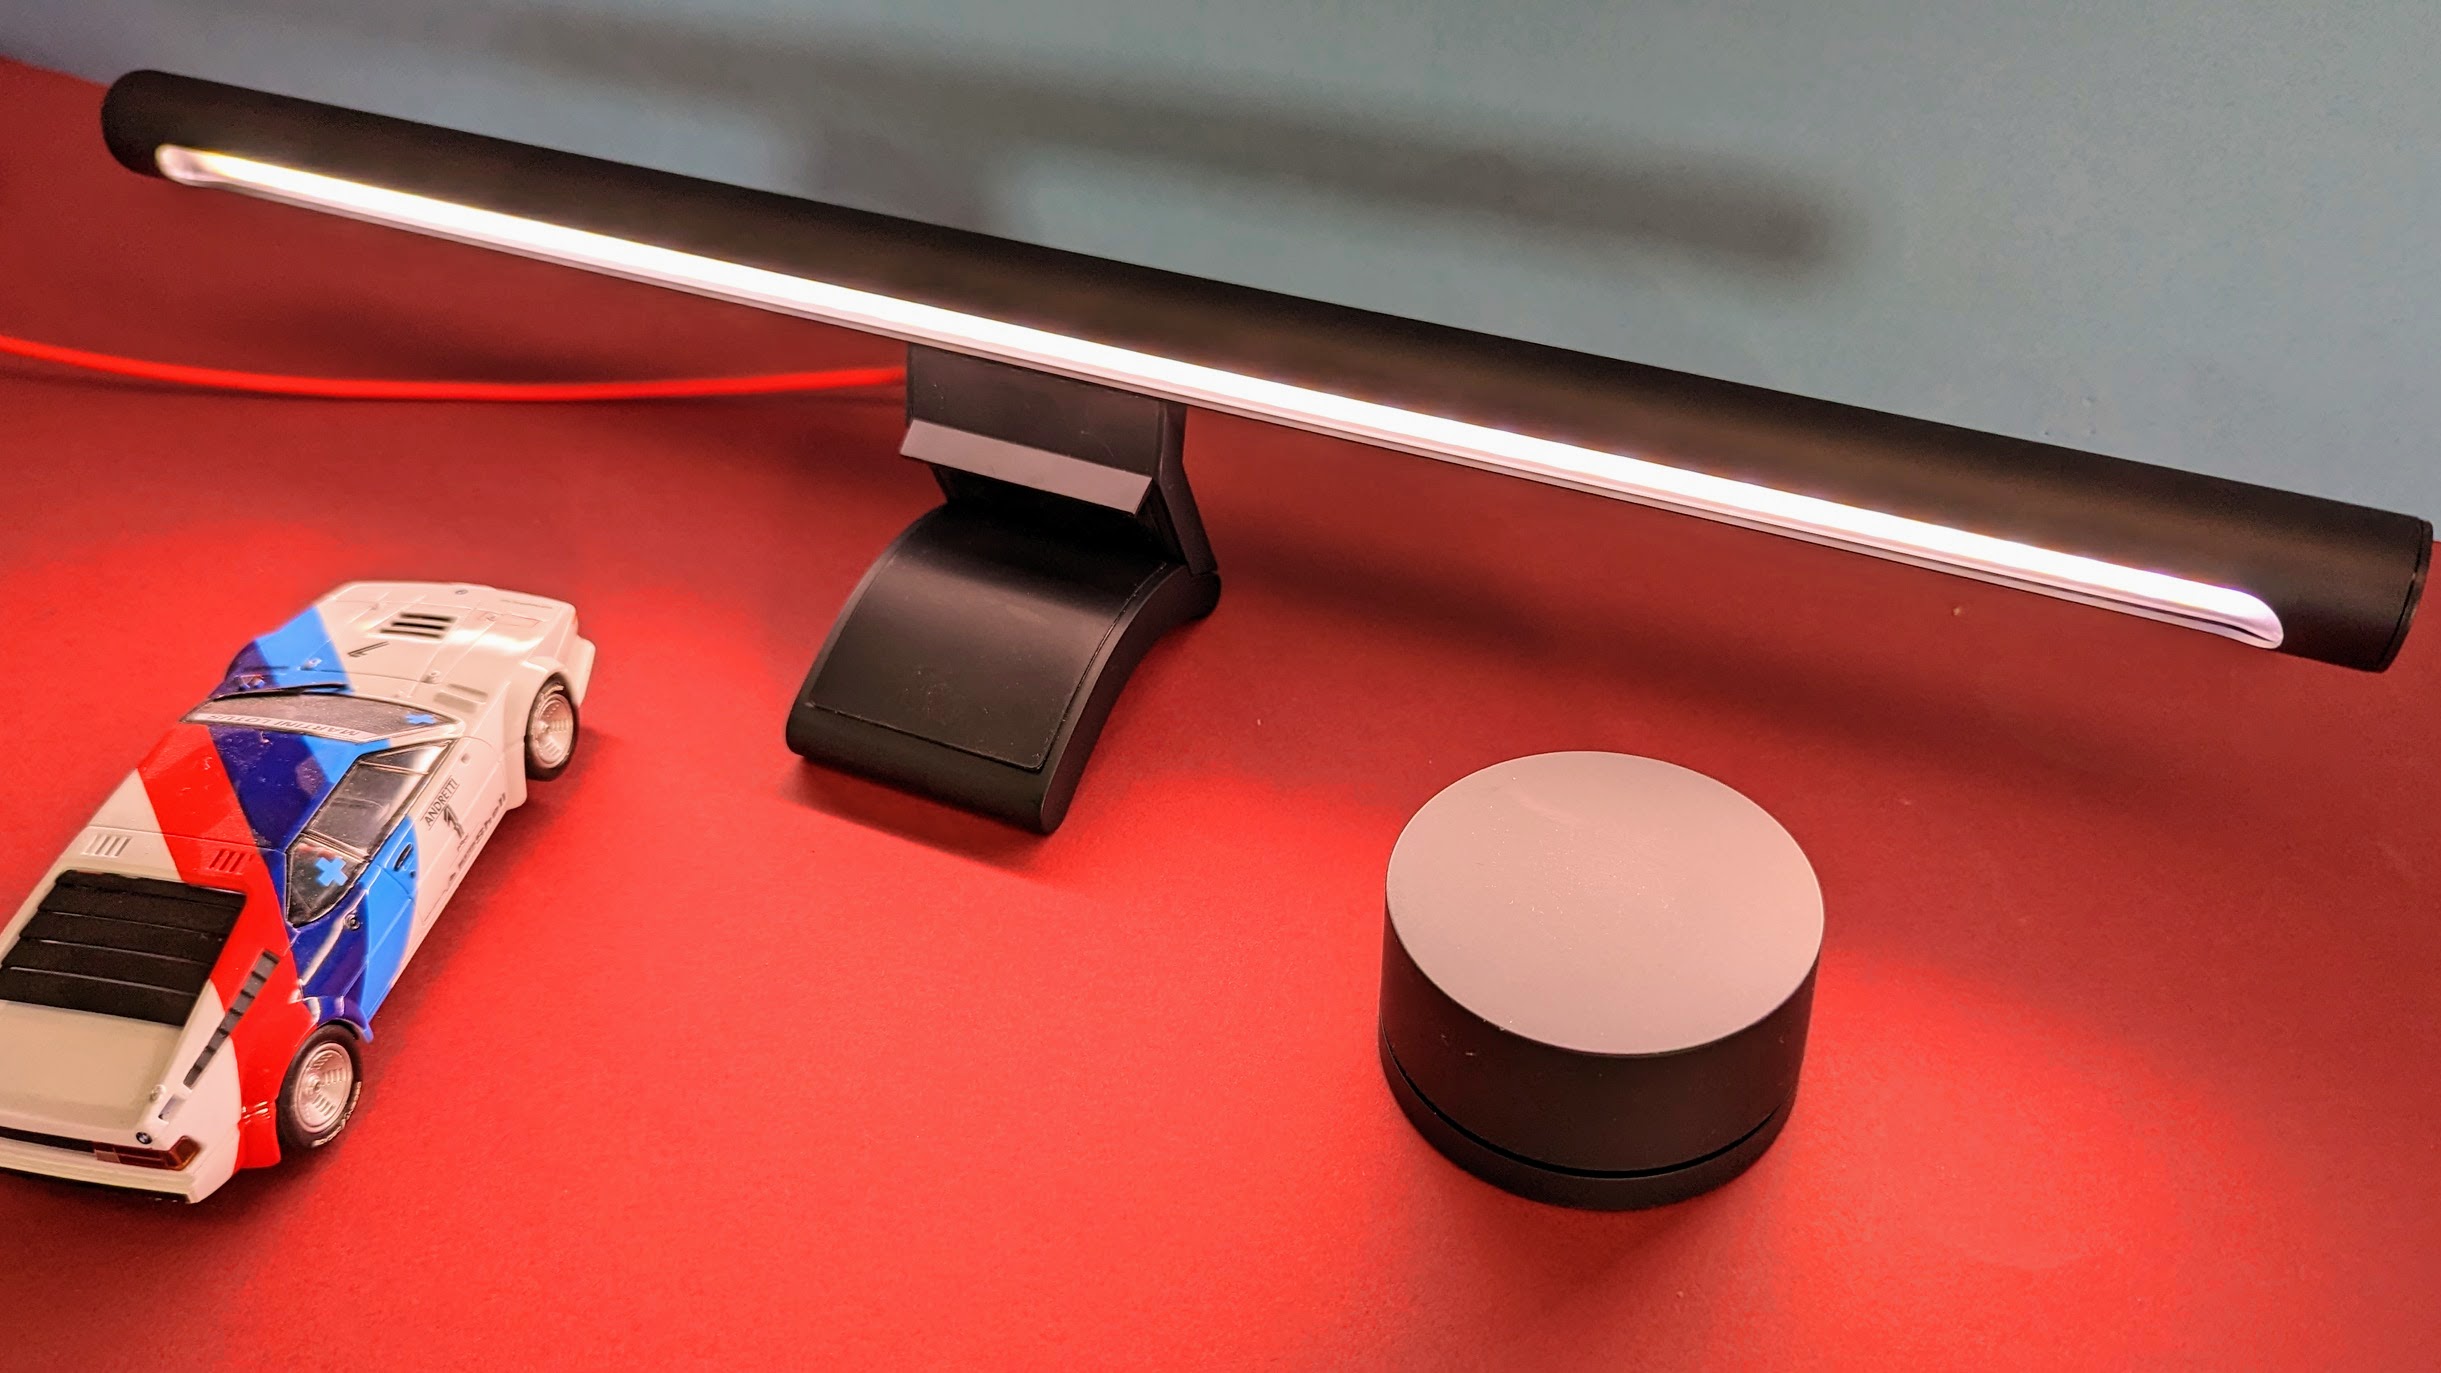 Xiaomi Mi Computer Monitor Light Bar im Test: Es werde Licht